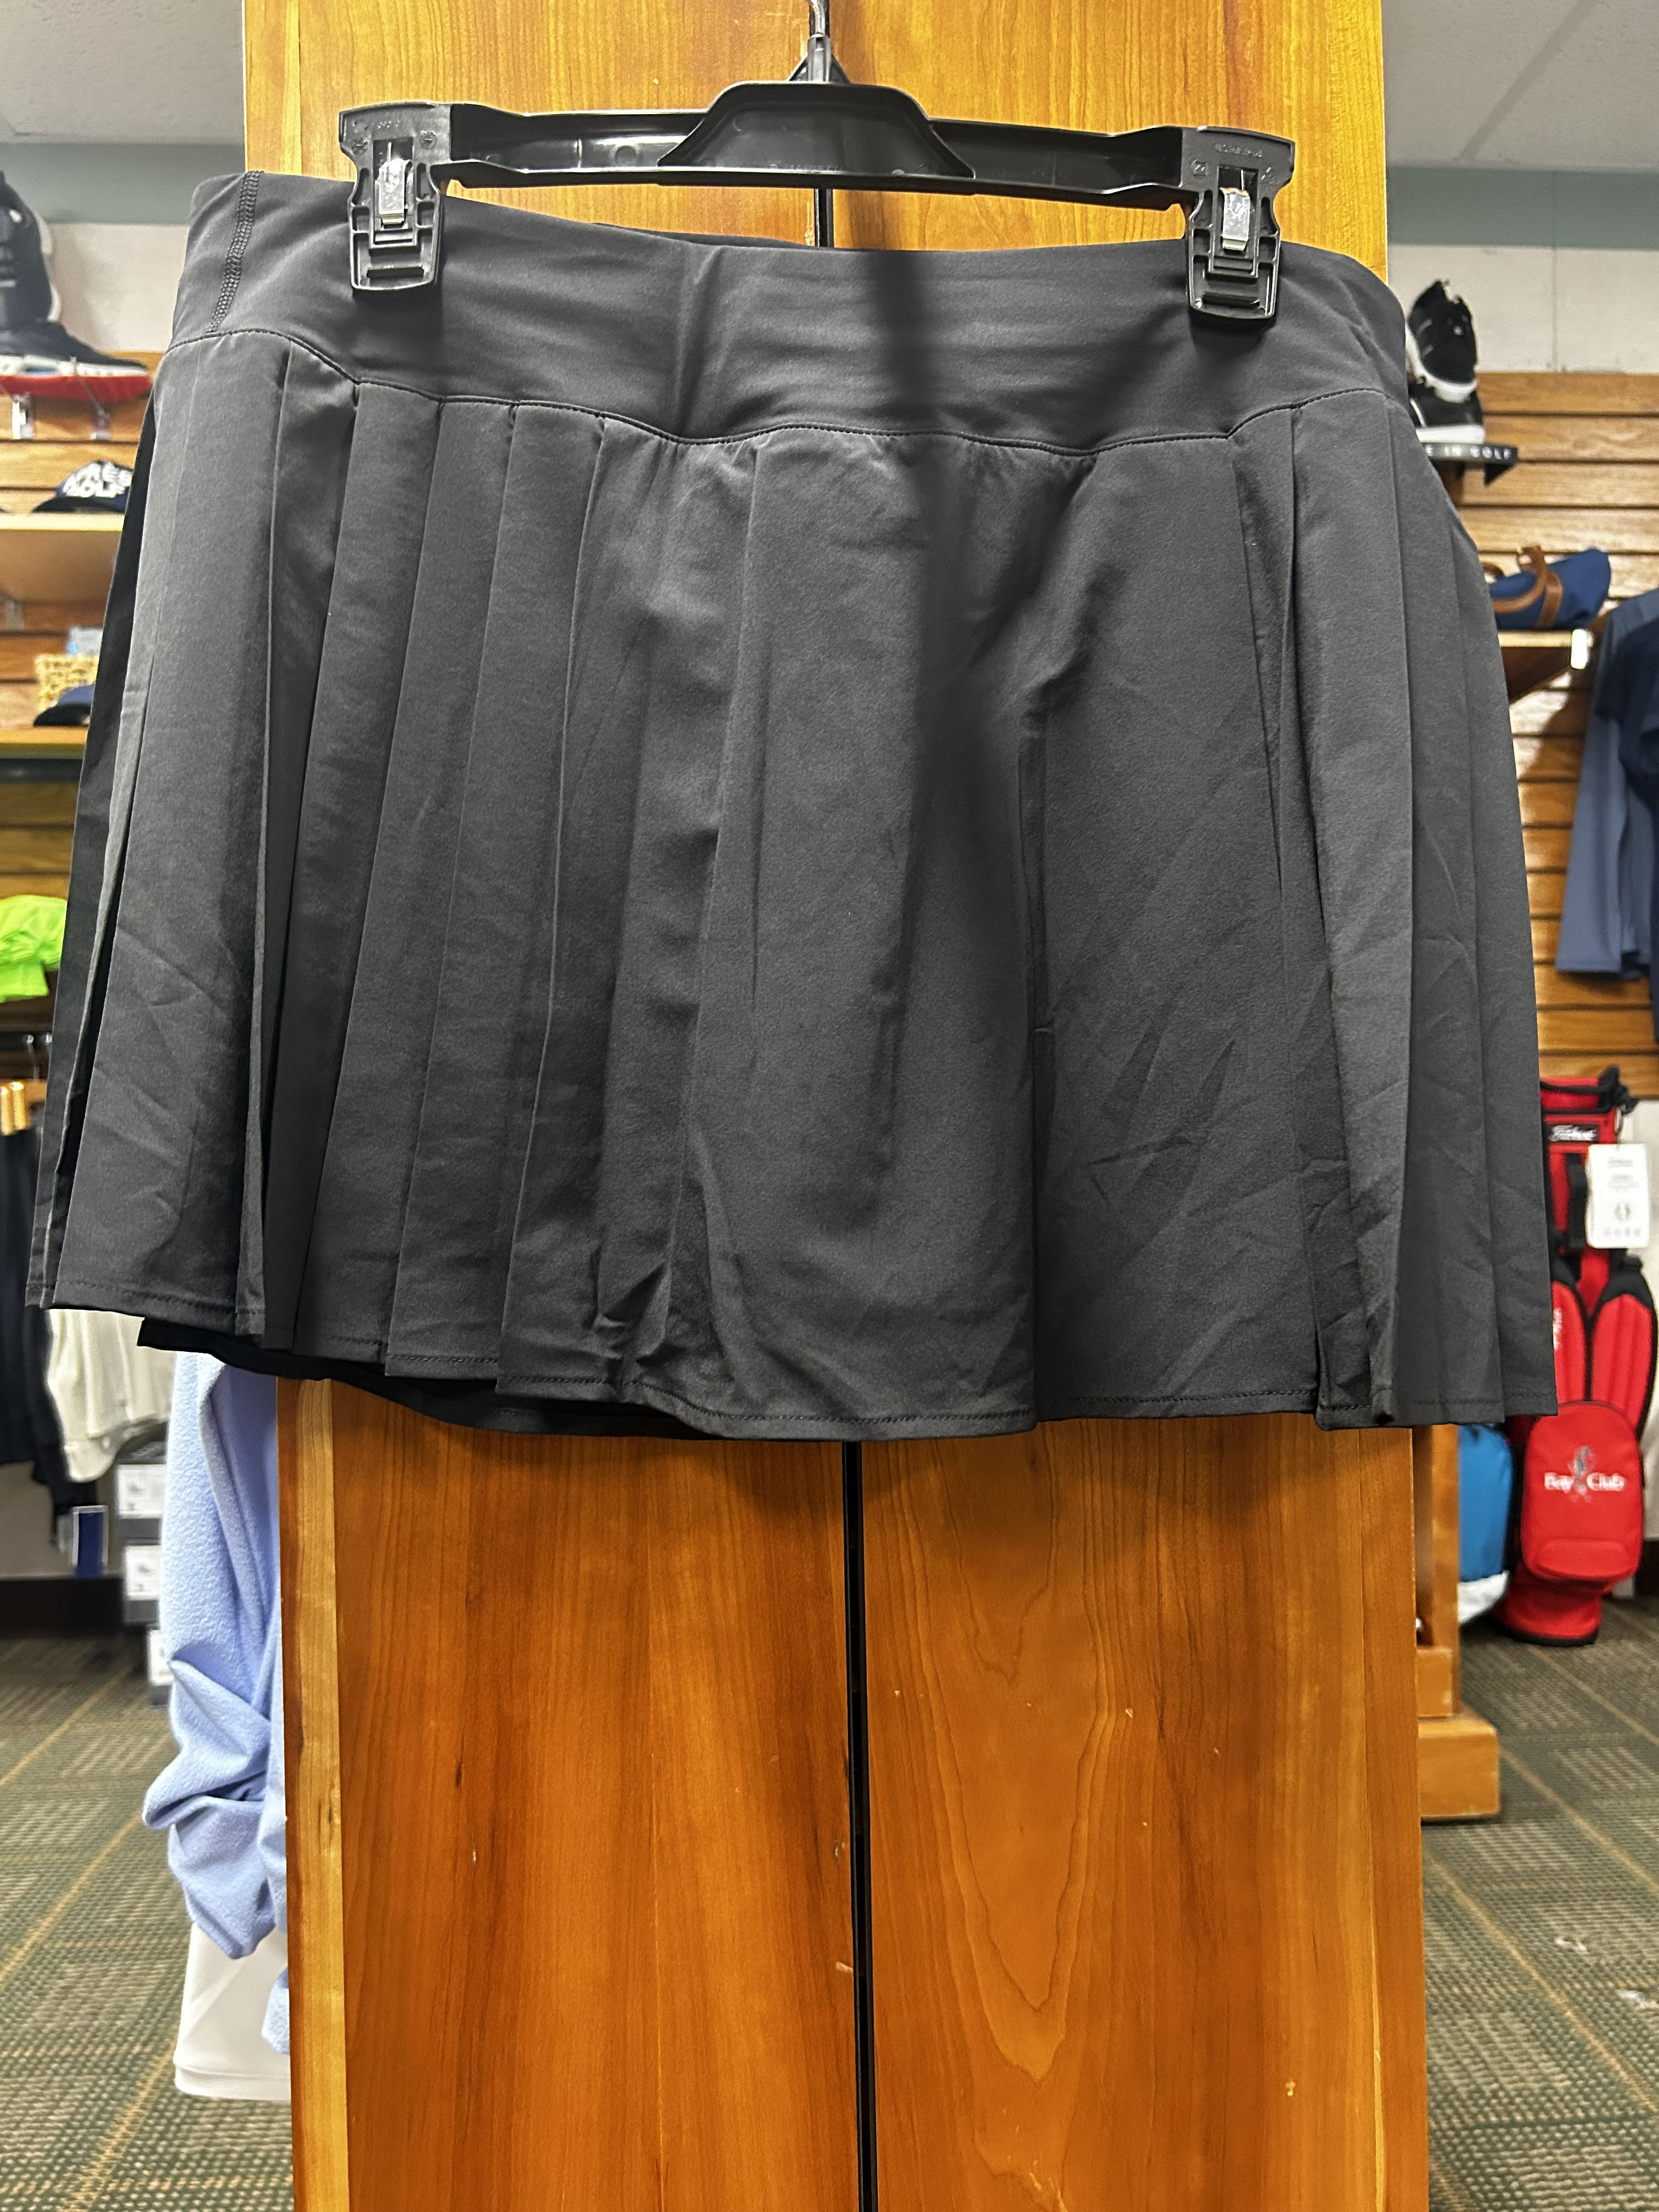 Lululemon Side-Peat Tennis Skirt